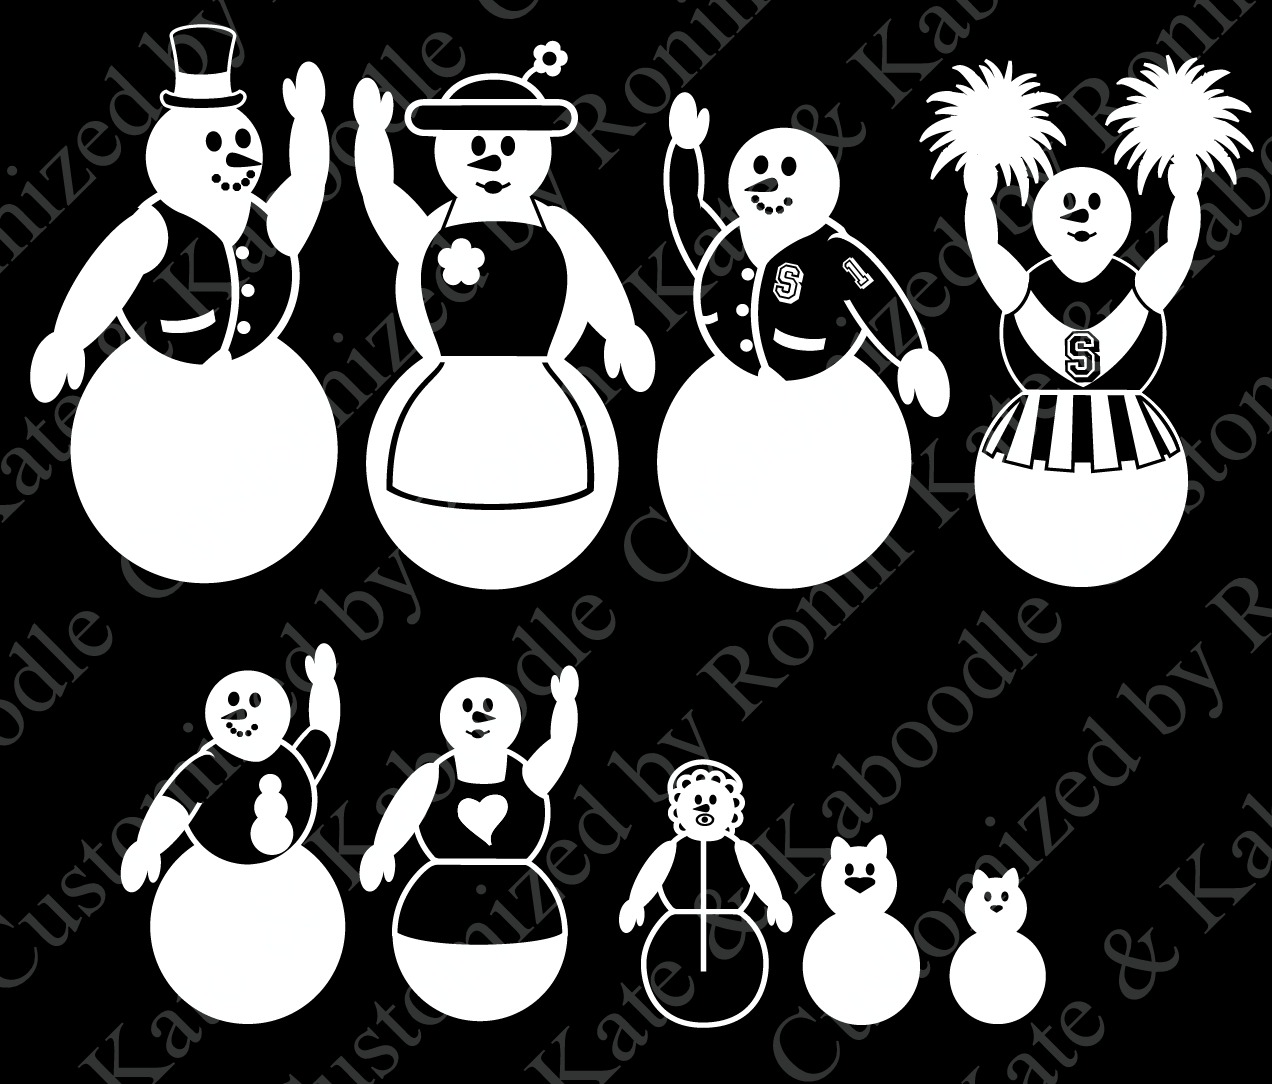 Snow man family prototype_1 by Battou